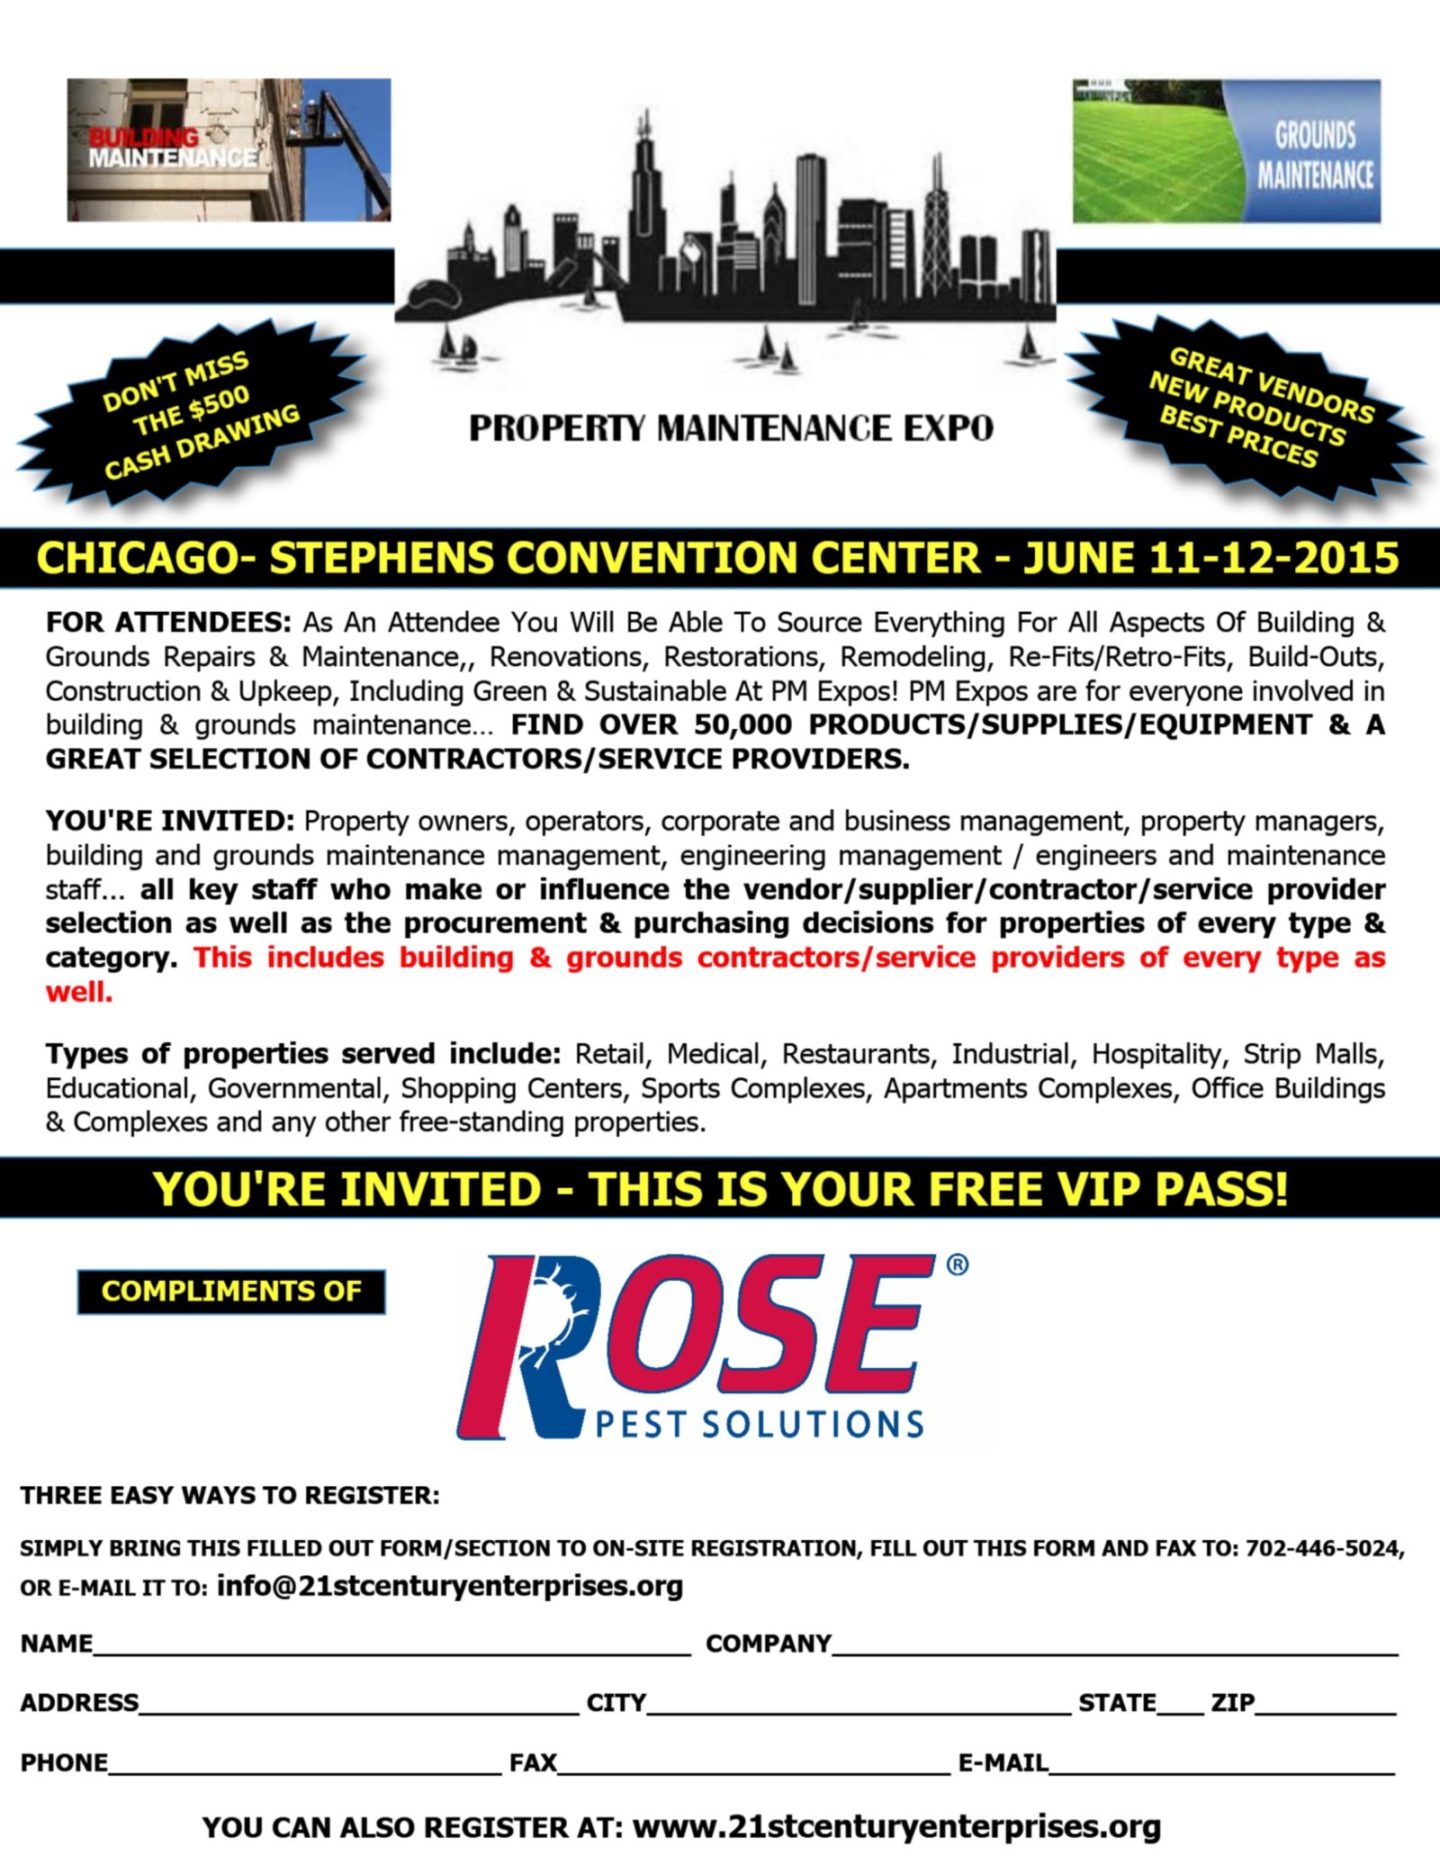 Rose_Chicago_VIP_Pass